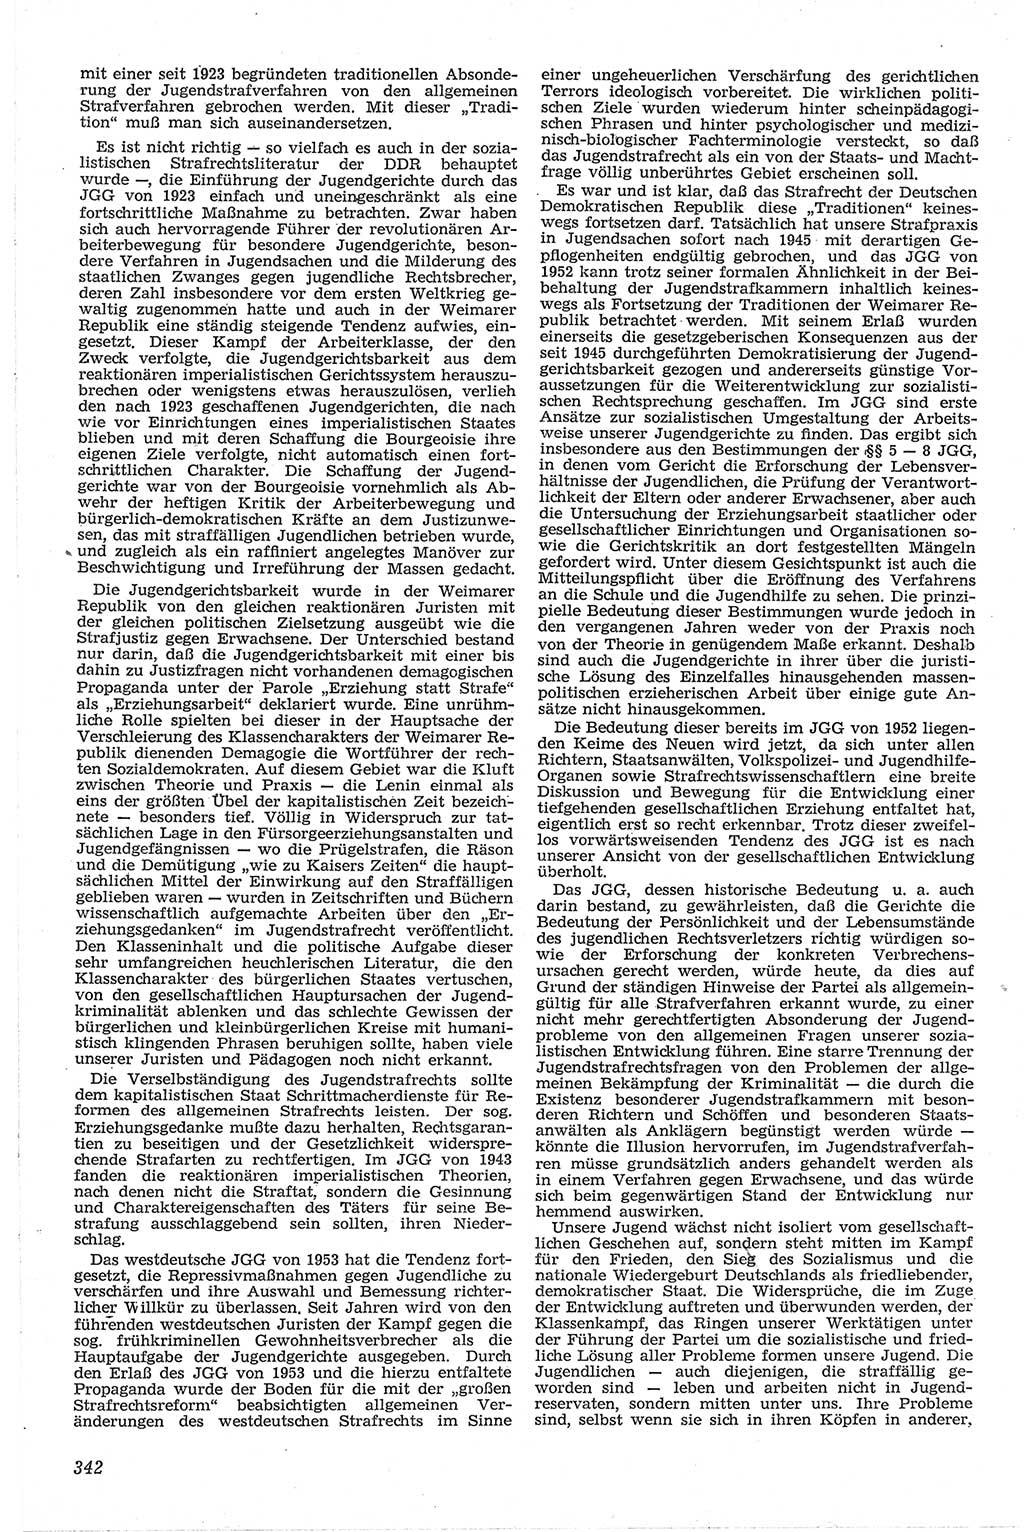 Neue Justiz (NJ), Zeitschrift für Recht und Rechtswissenschaft [Deutsche Demokratische Republik (DDR)], 13. Jahrgang 1959, Seite 342 (NJ DDR 1959, S. 342)